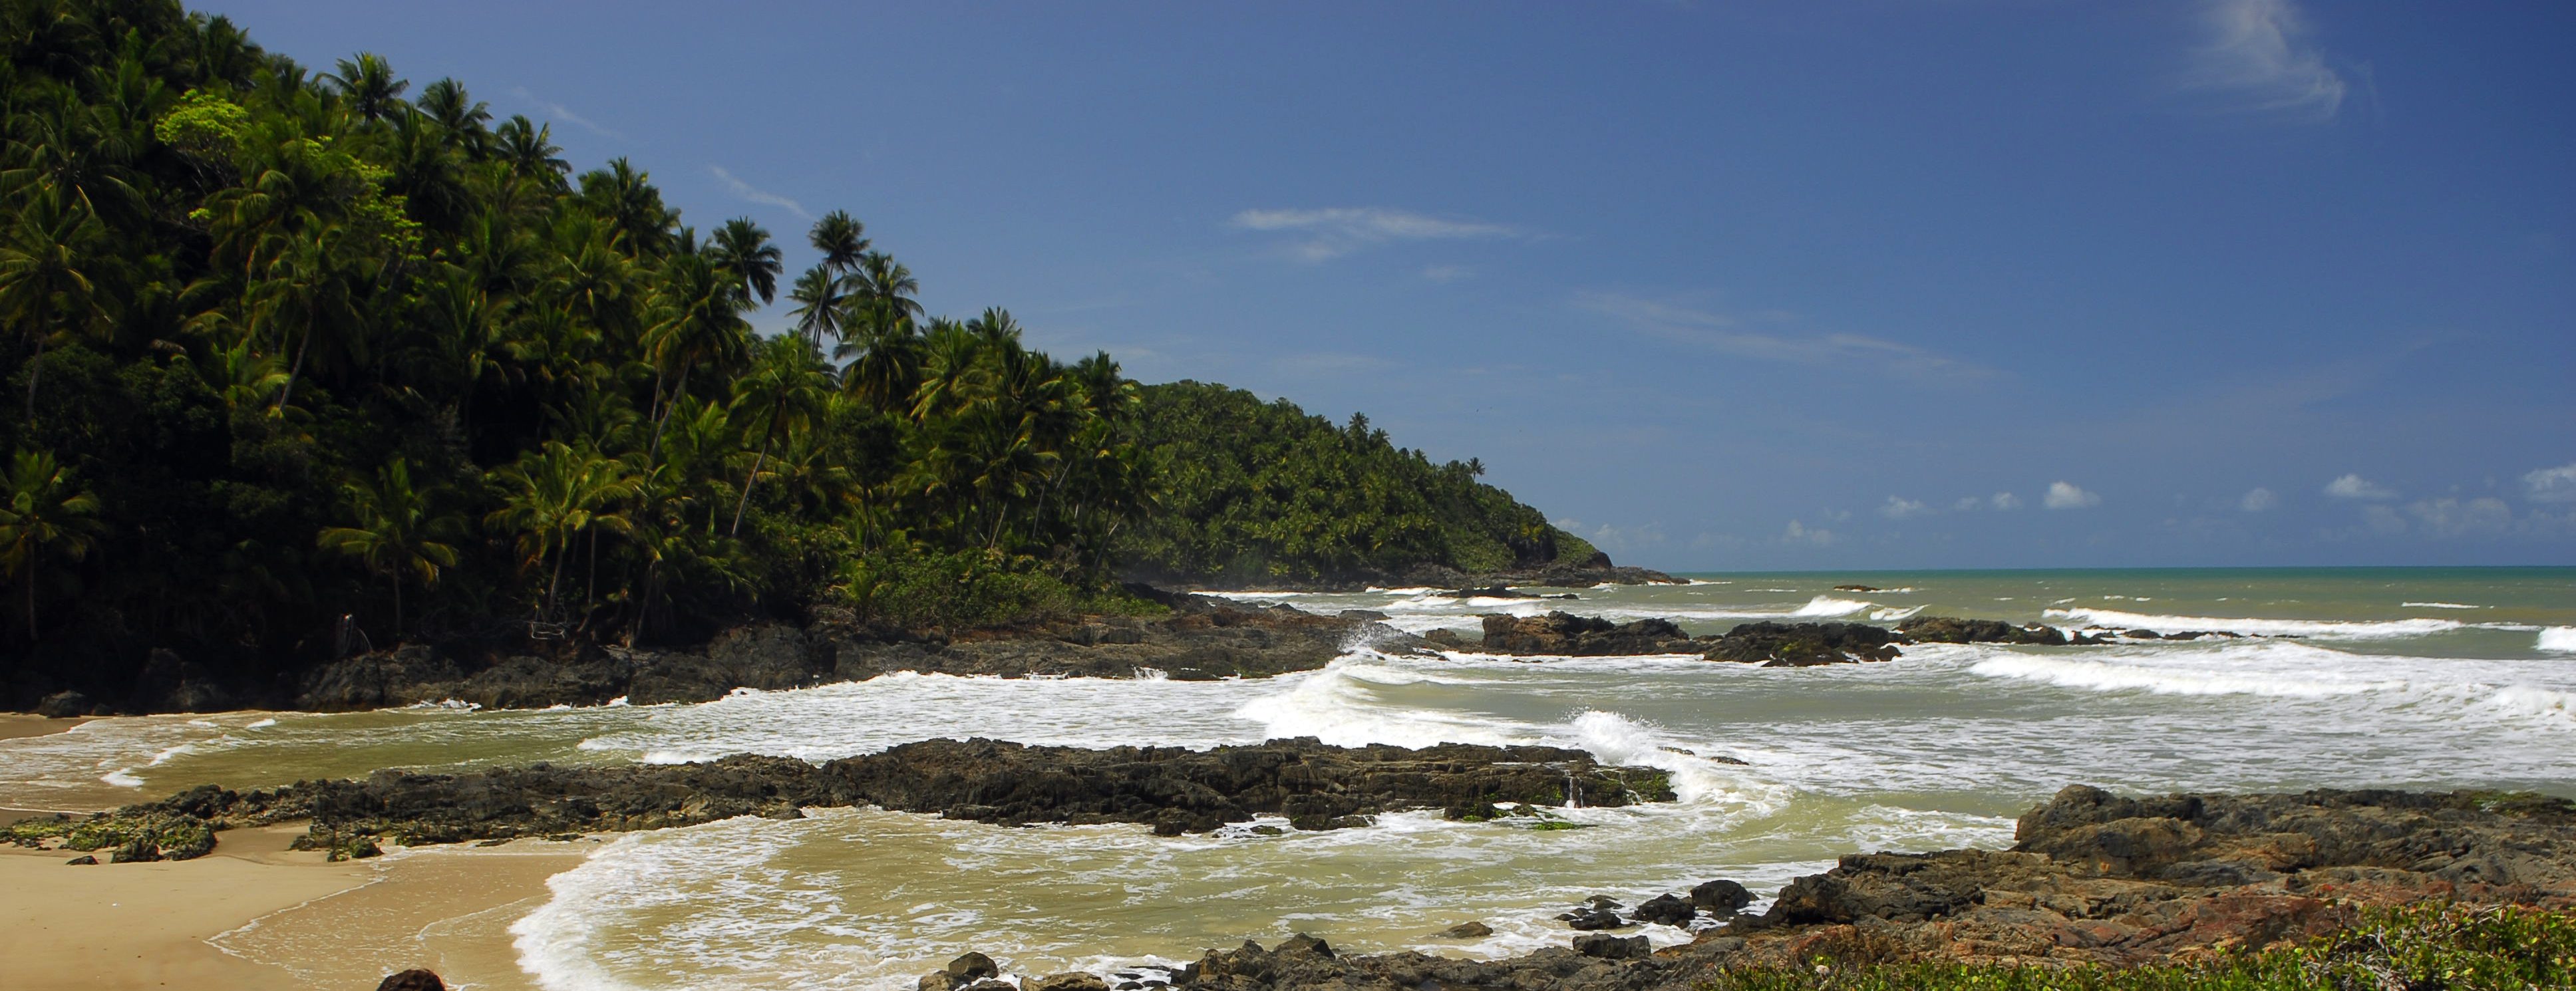 Itacaré, where the jungle meets the ocean at a beautiful beach. 